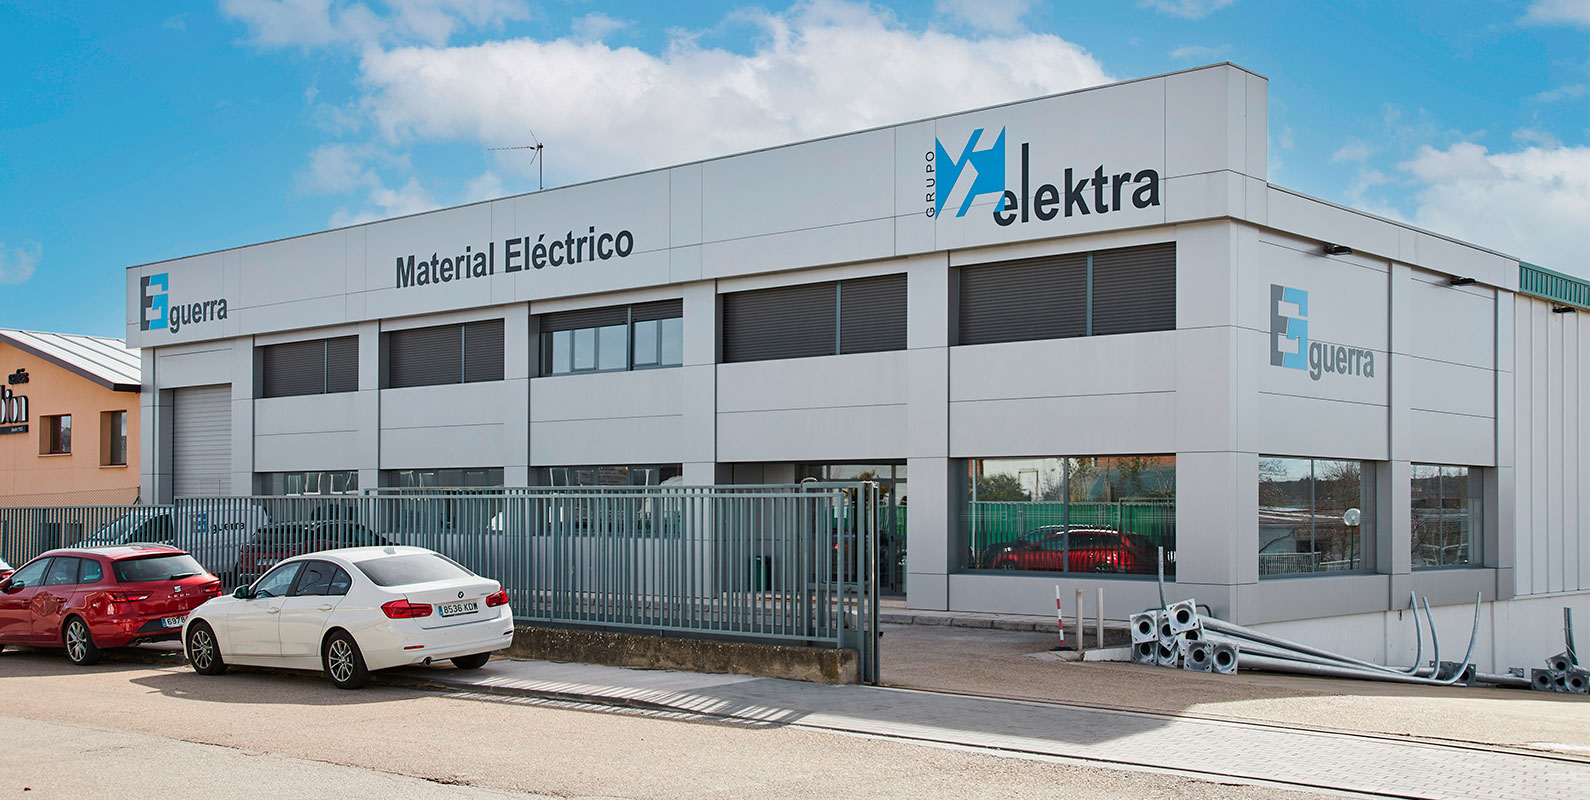 Electricidad Guerra SORIA - Store - Grupo Elektra